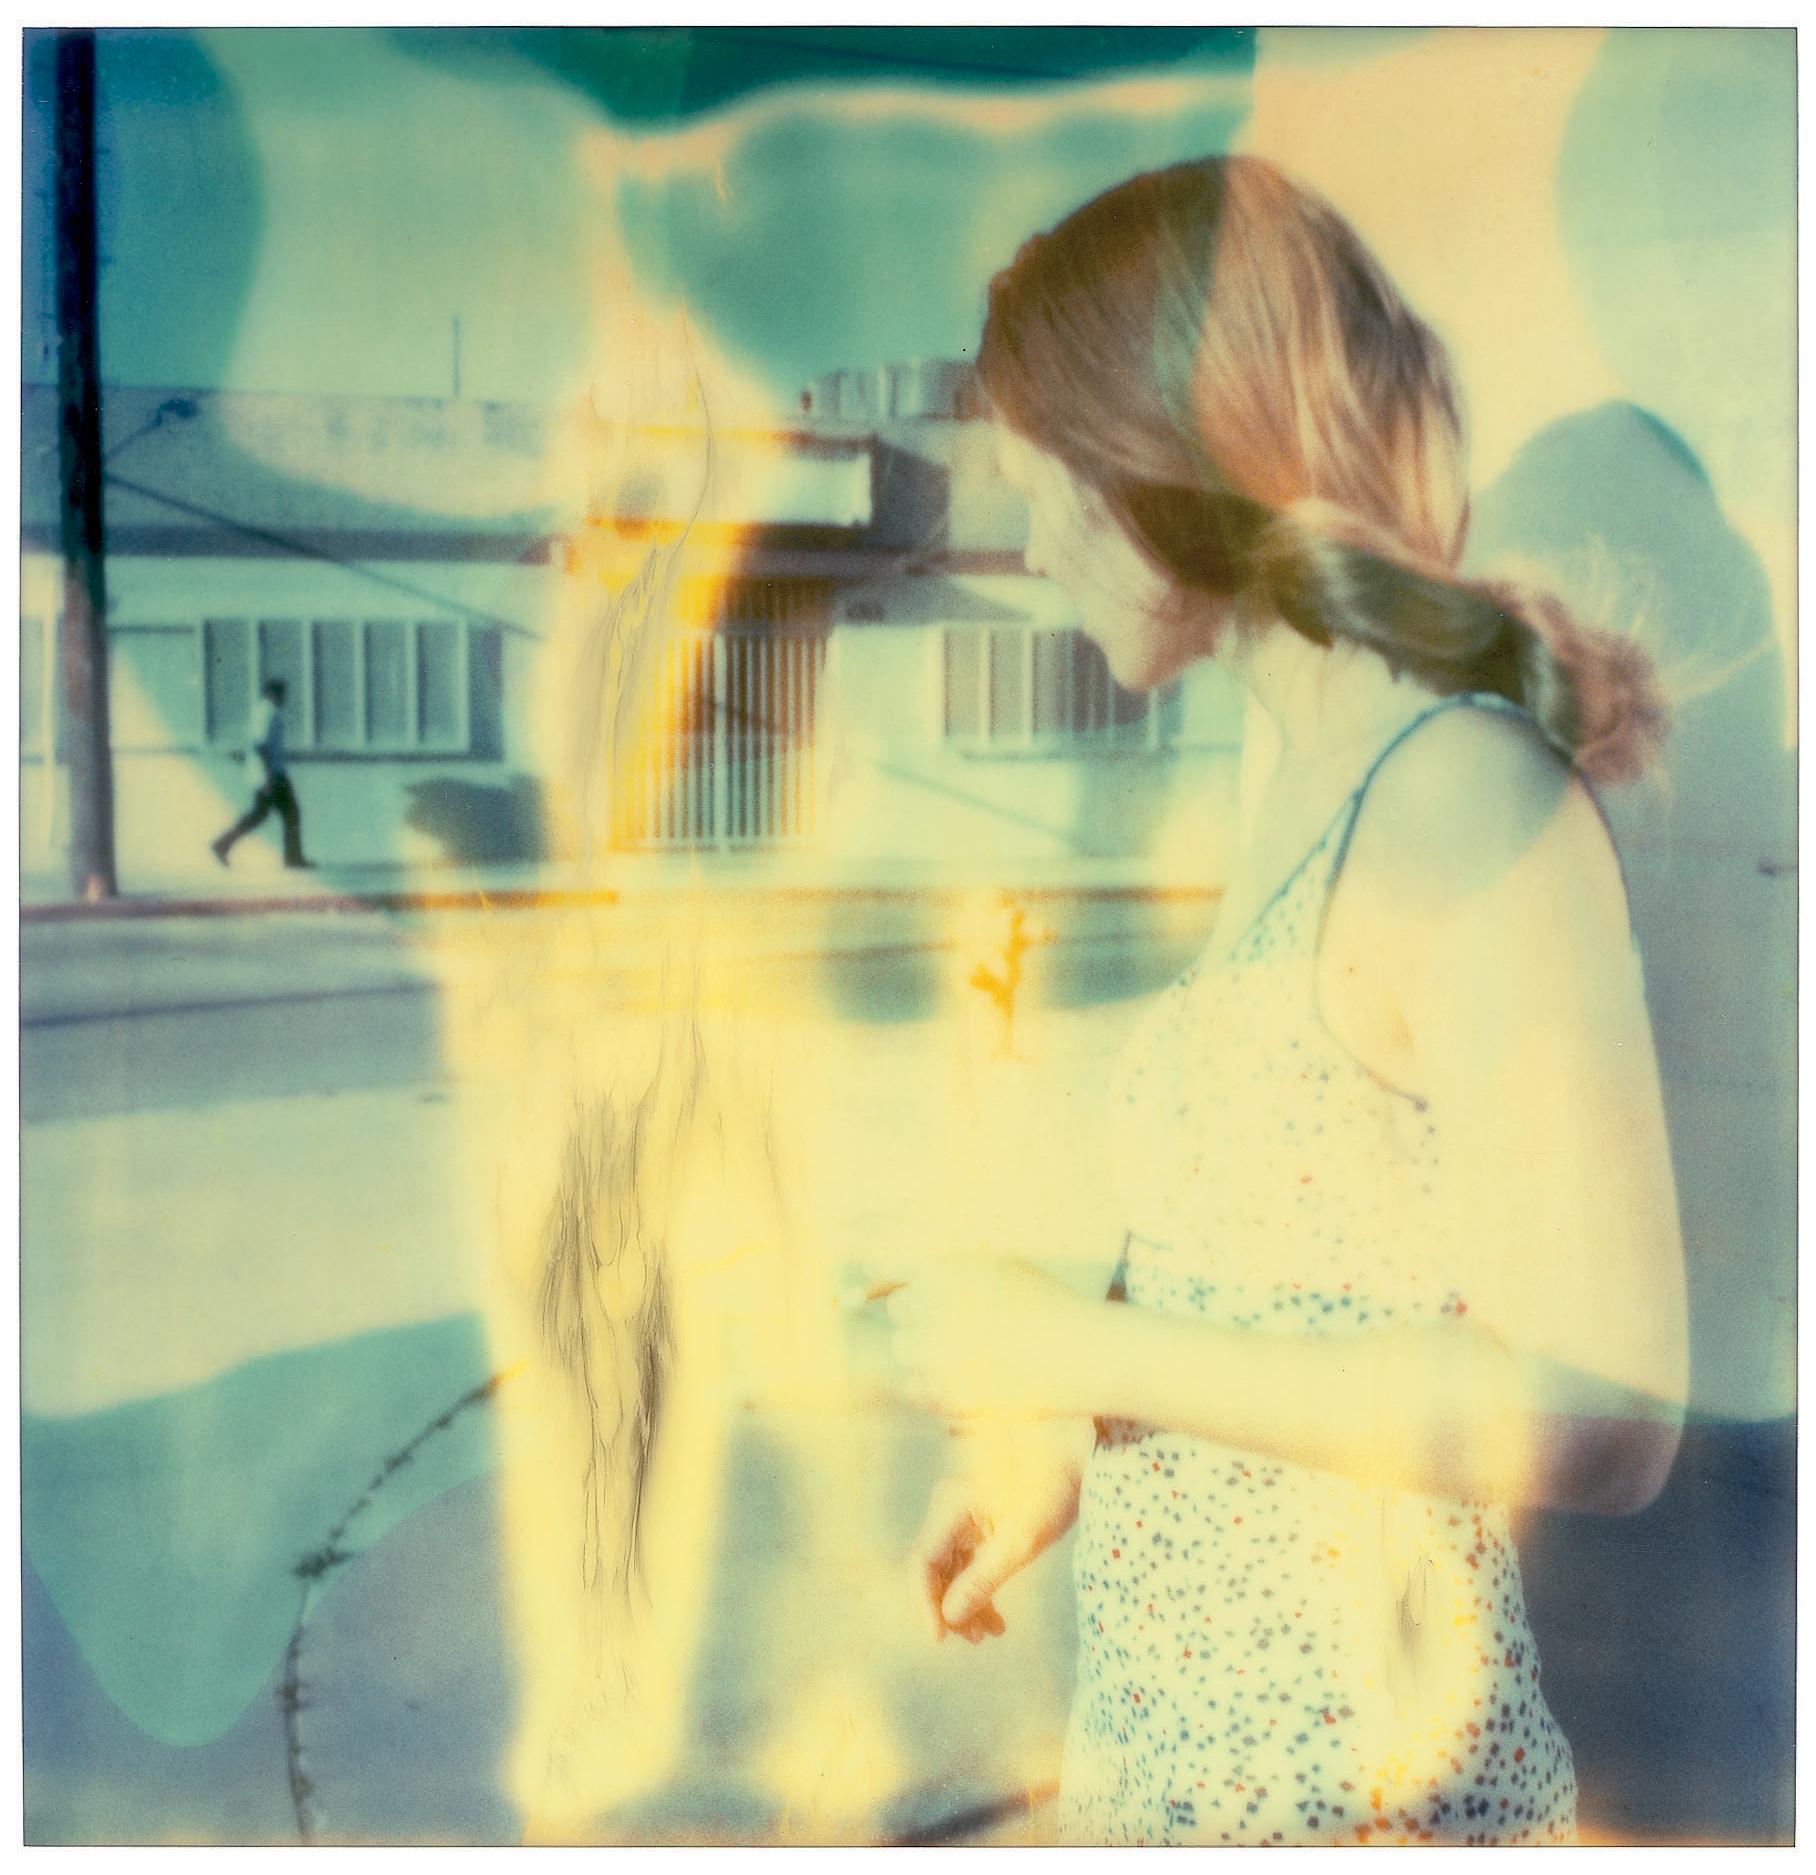 Streetcorner (Größer als Paradies)  Contemporary, Frau, Polaroid, Traum – Photograph von Stefanie Schneider